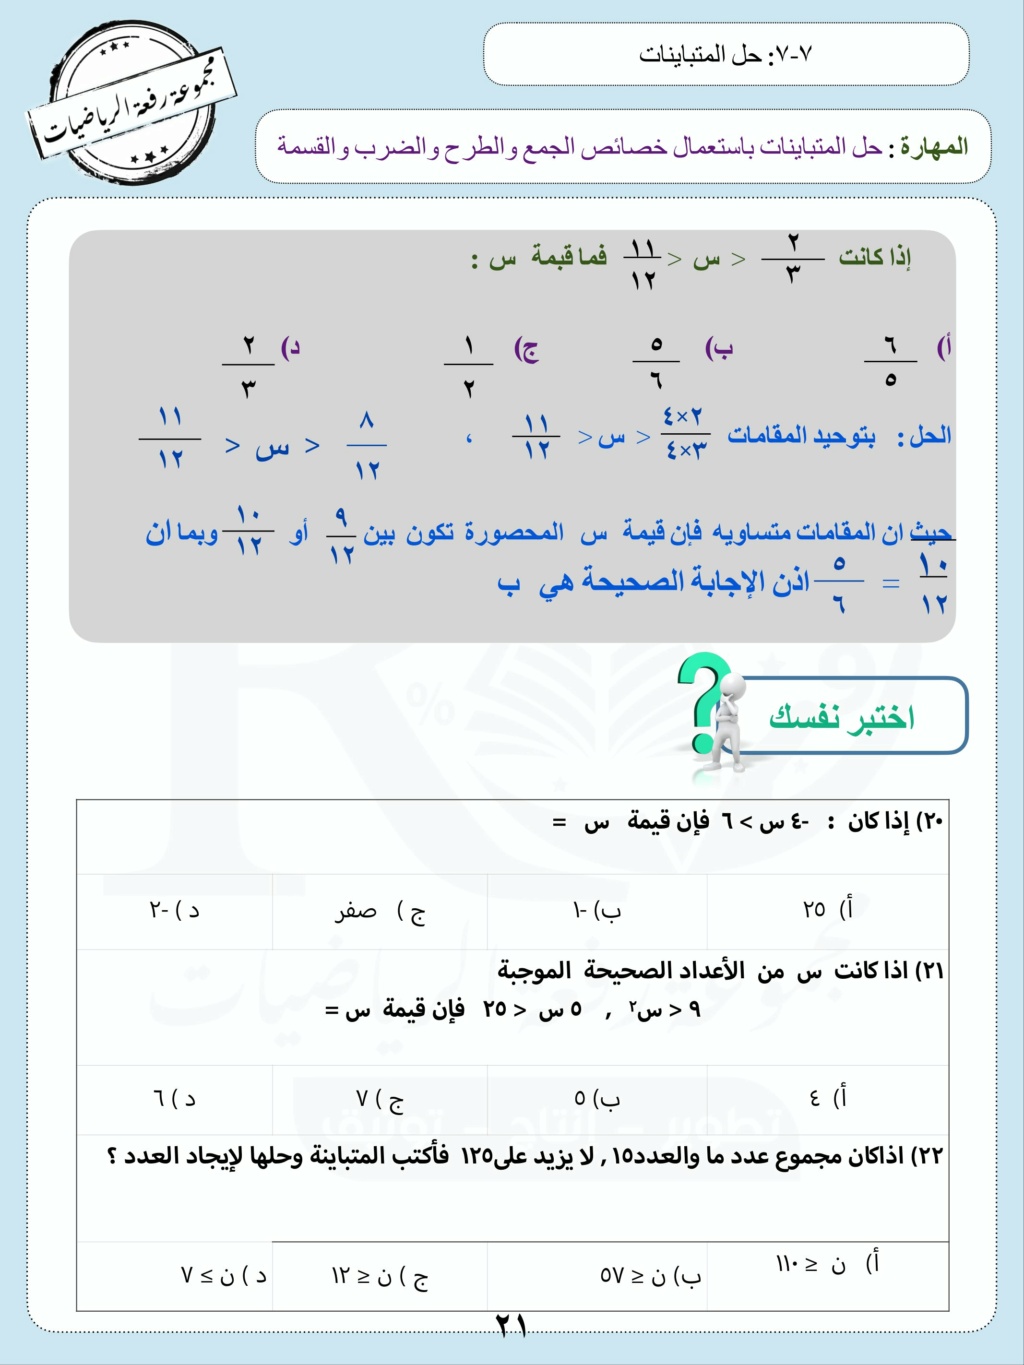 تحميل اسئلة القدرات الرياضيات الثاني المتوسط الفصل الثالث 1444 هـ Aco_oo28